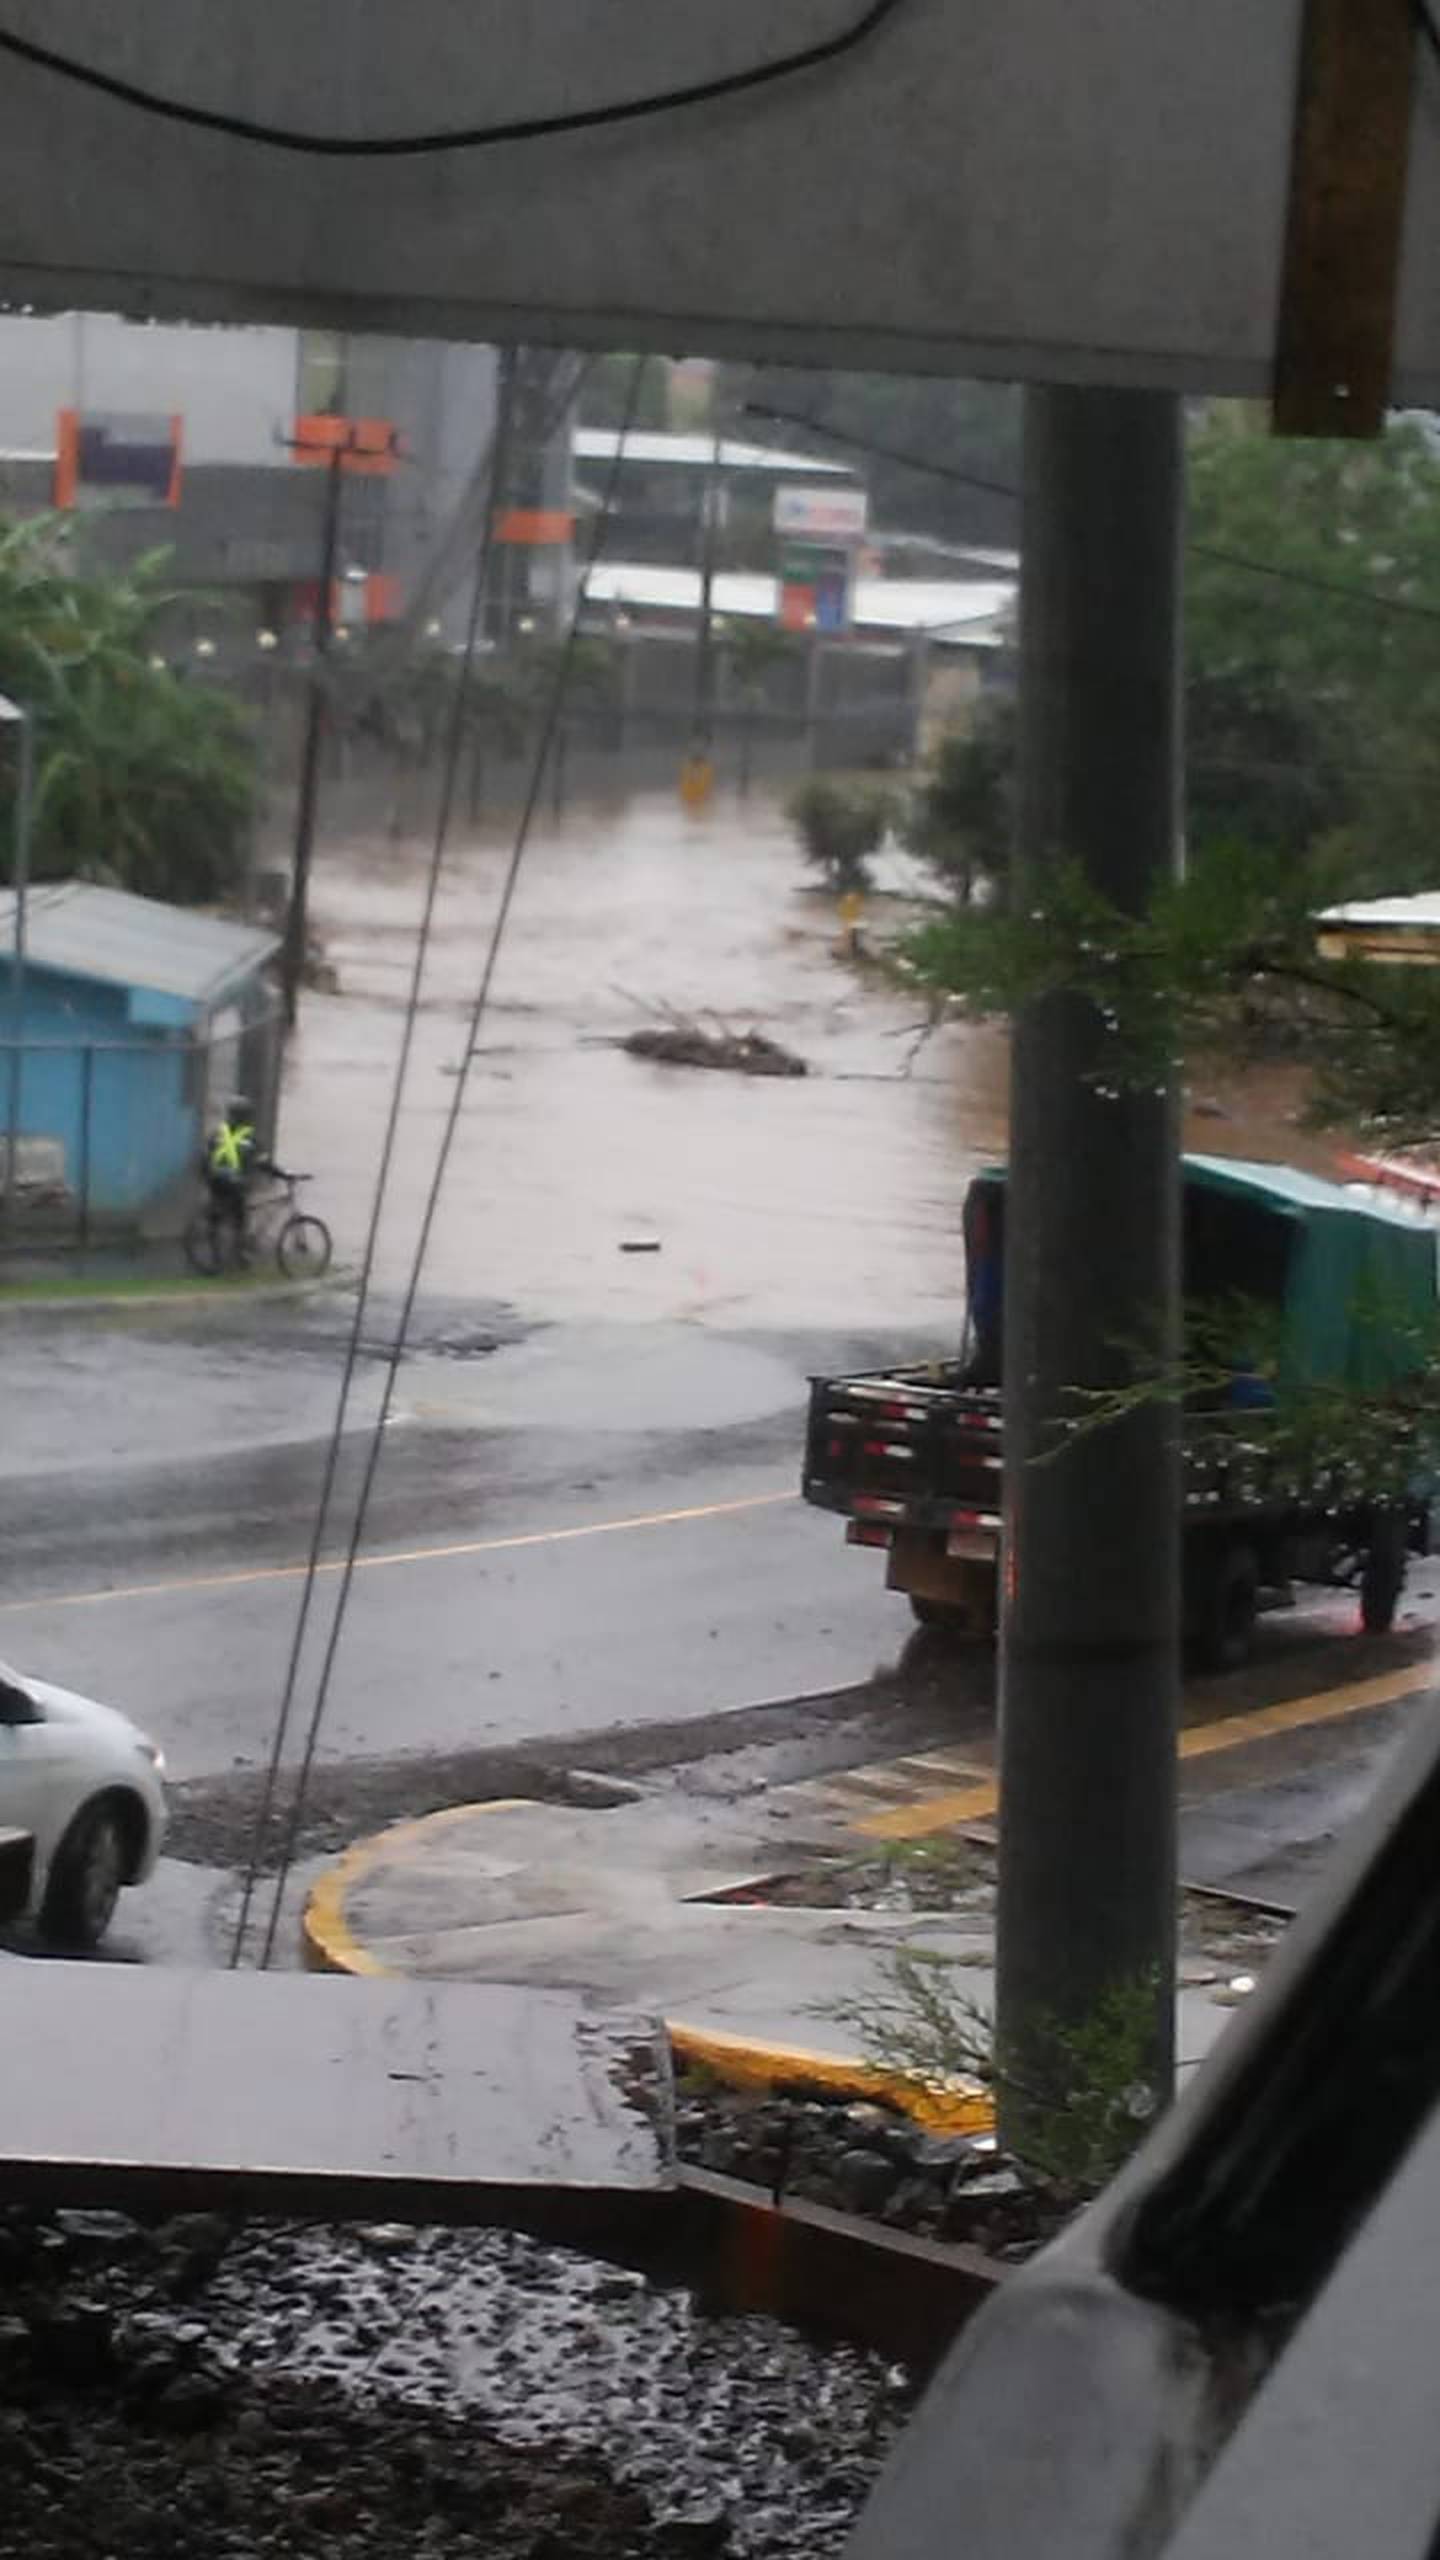 Lluvias causas inundaciones en Curridabat. Foto cortesía.